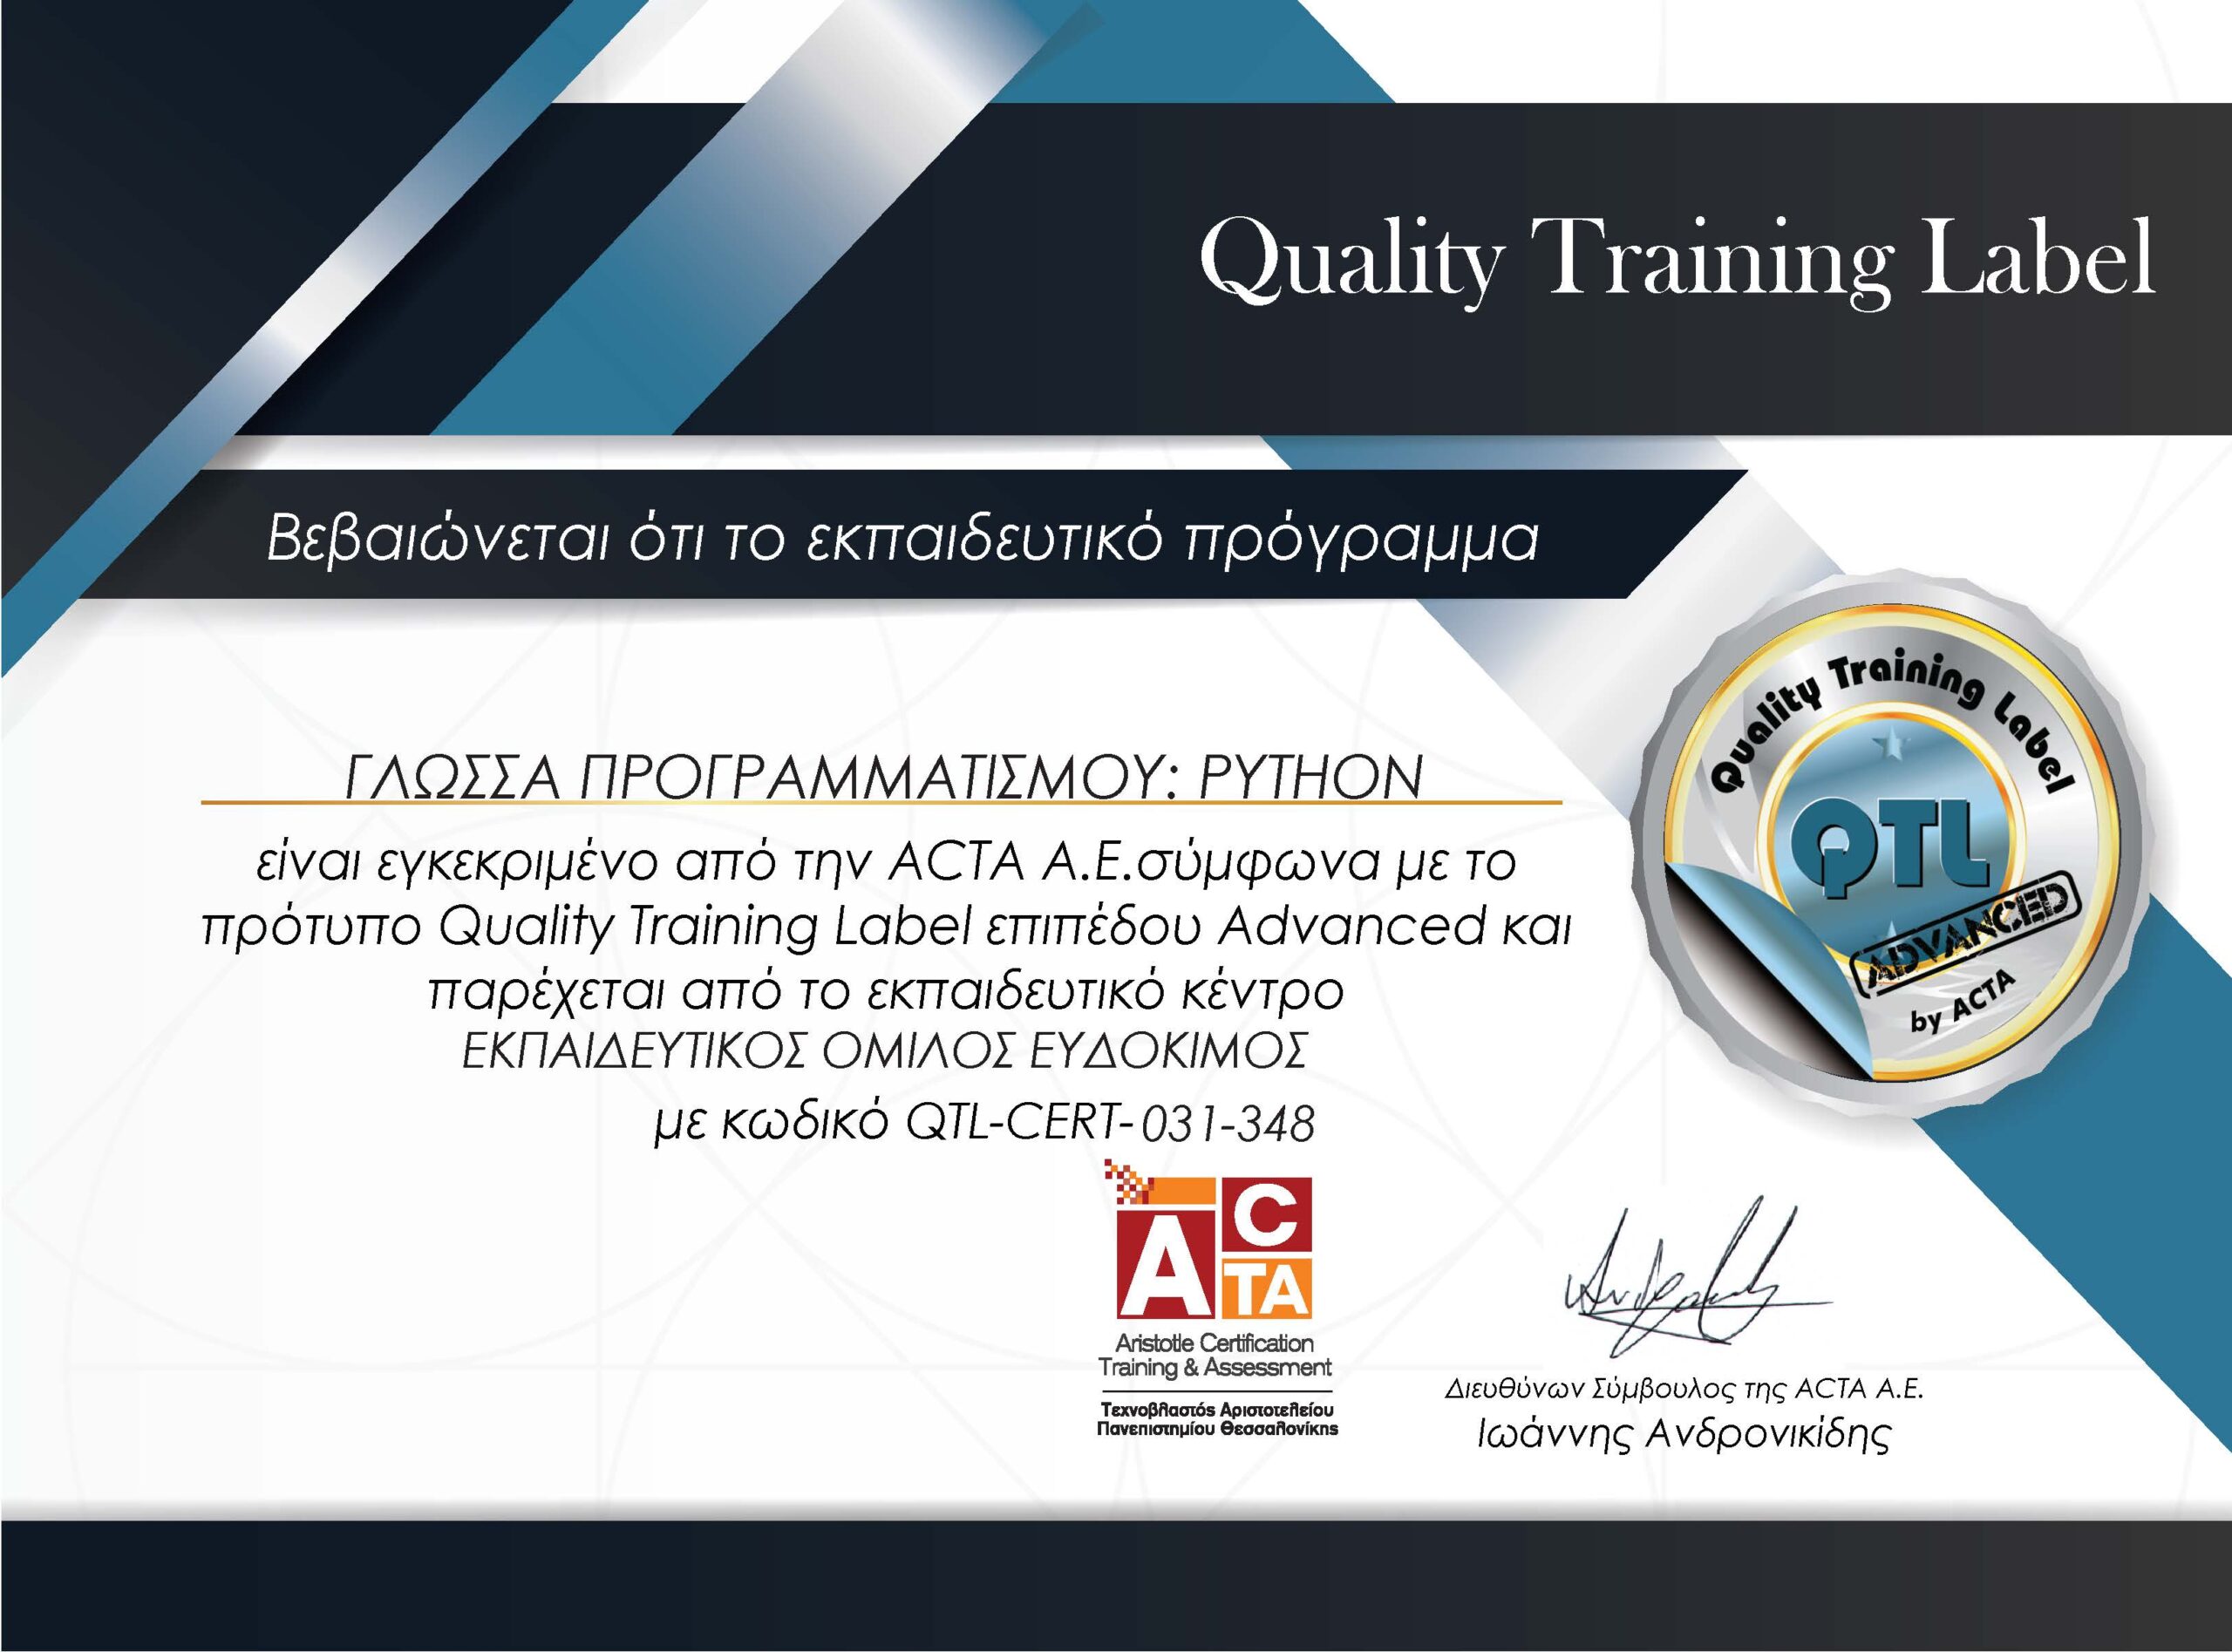 Γλώσσα προγραμματισμού: Python - Πιστοποιημένο εκπαιδευτικό πρόγραμμα της ACTA σύμφωνα με το πρότυπο QTL επιπέδου Advanced